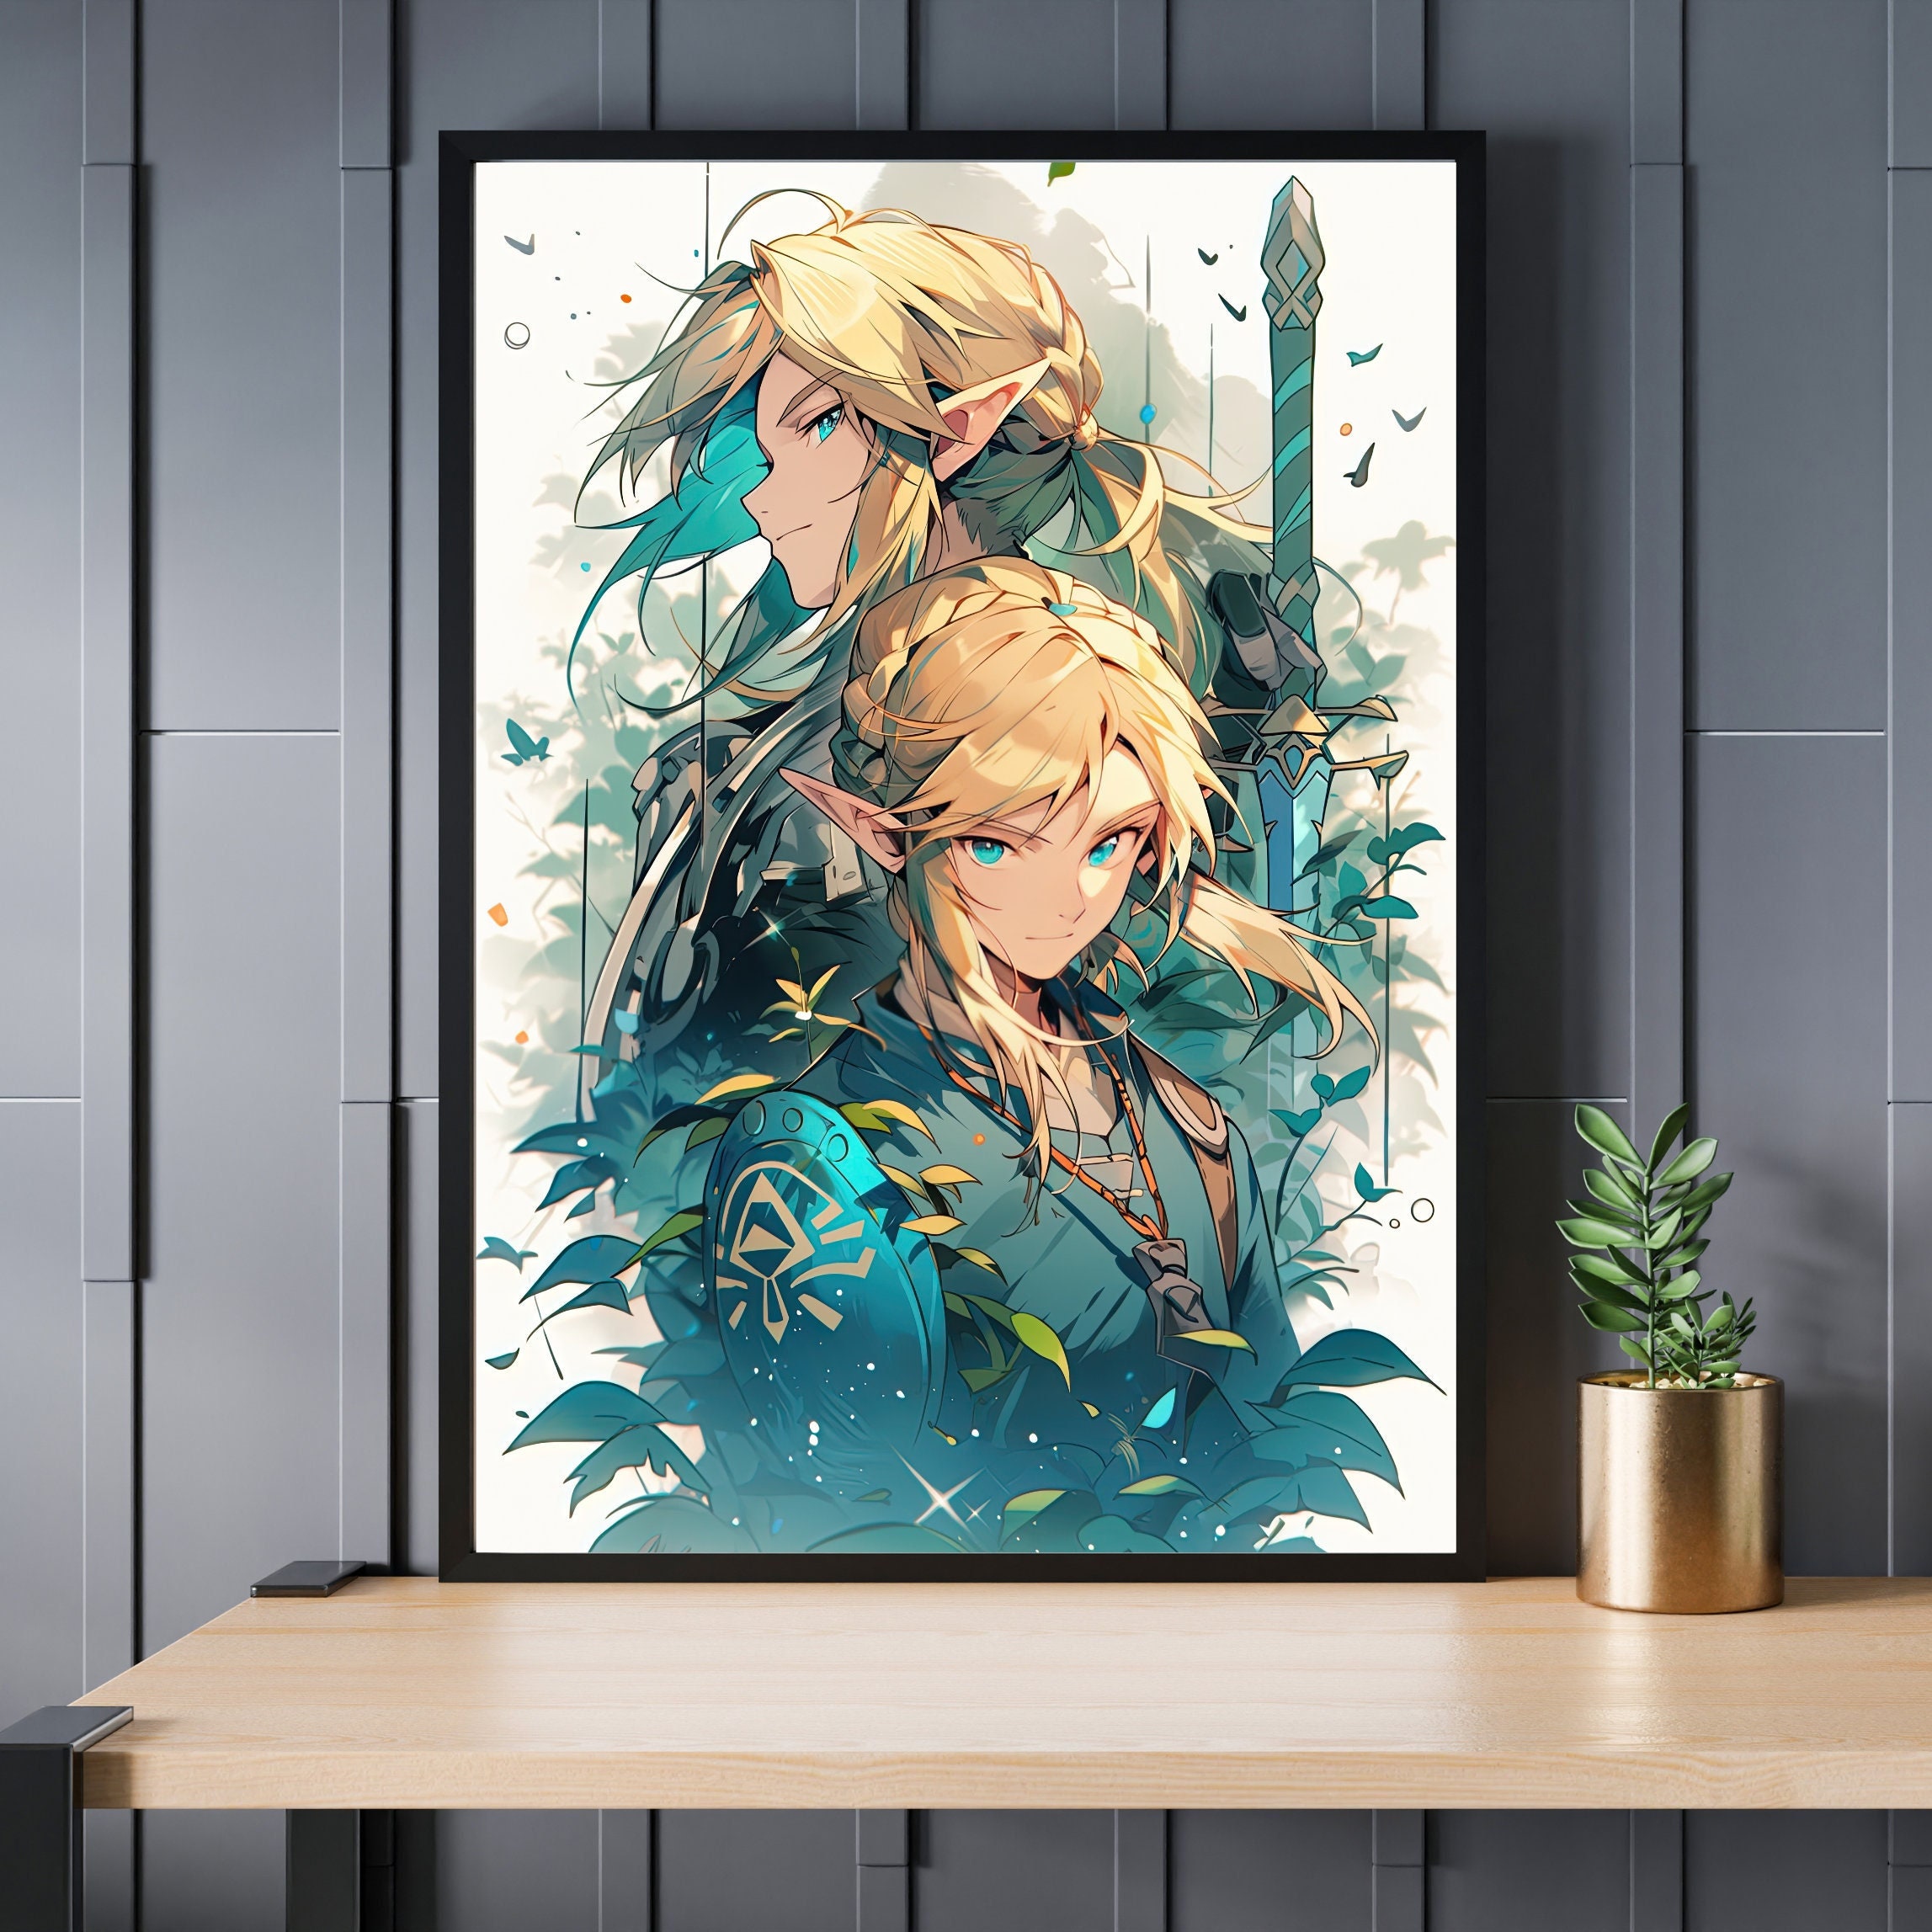 Zelda link portrait fan art - wall art handmade oil painting on canvas